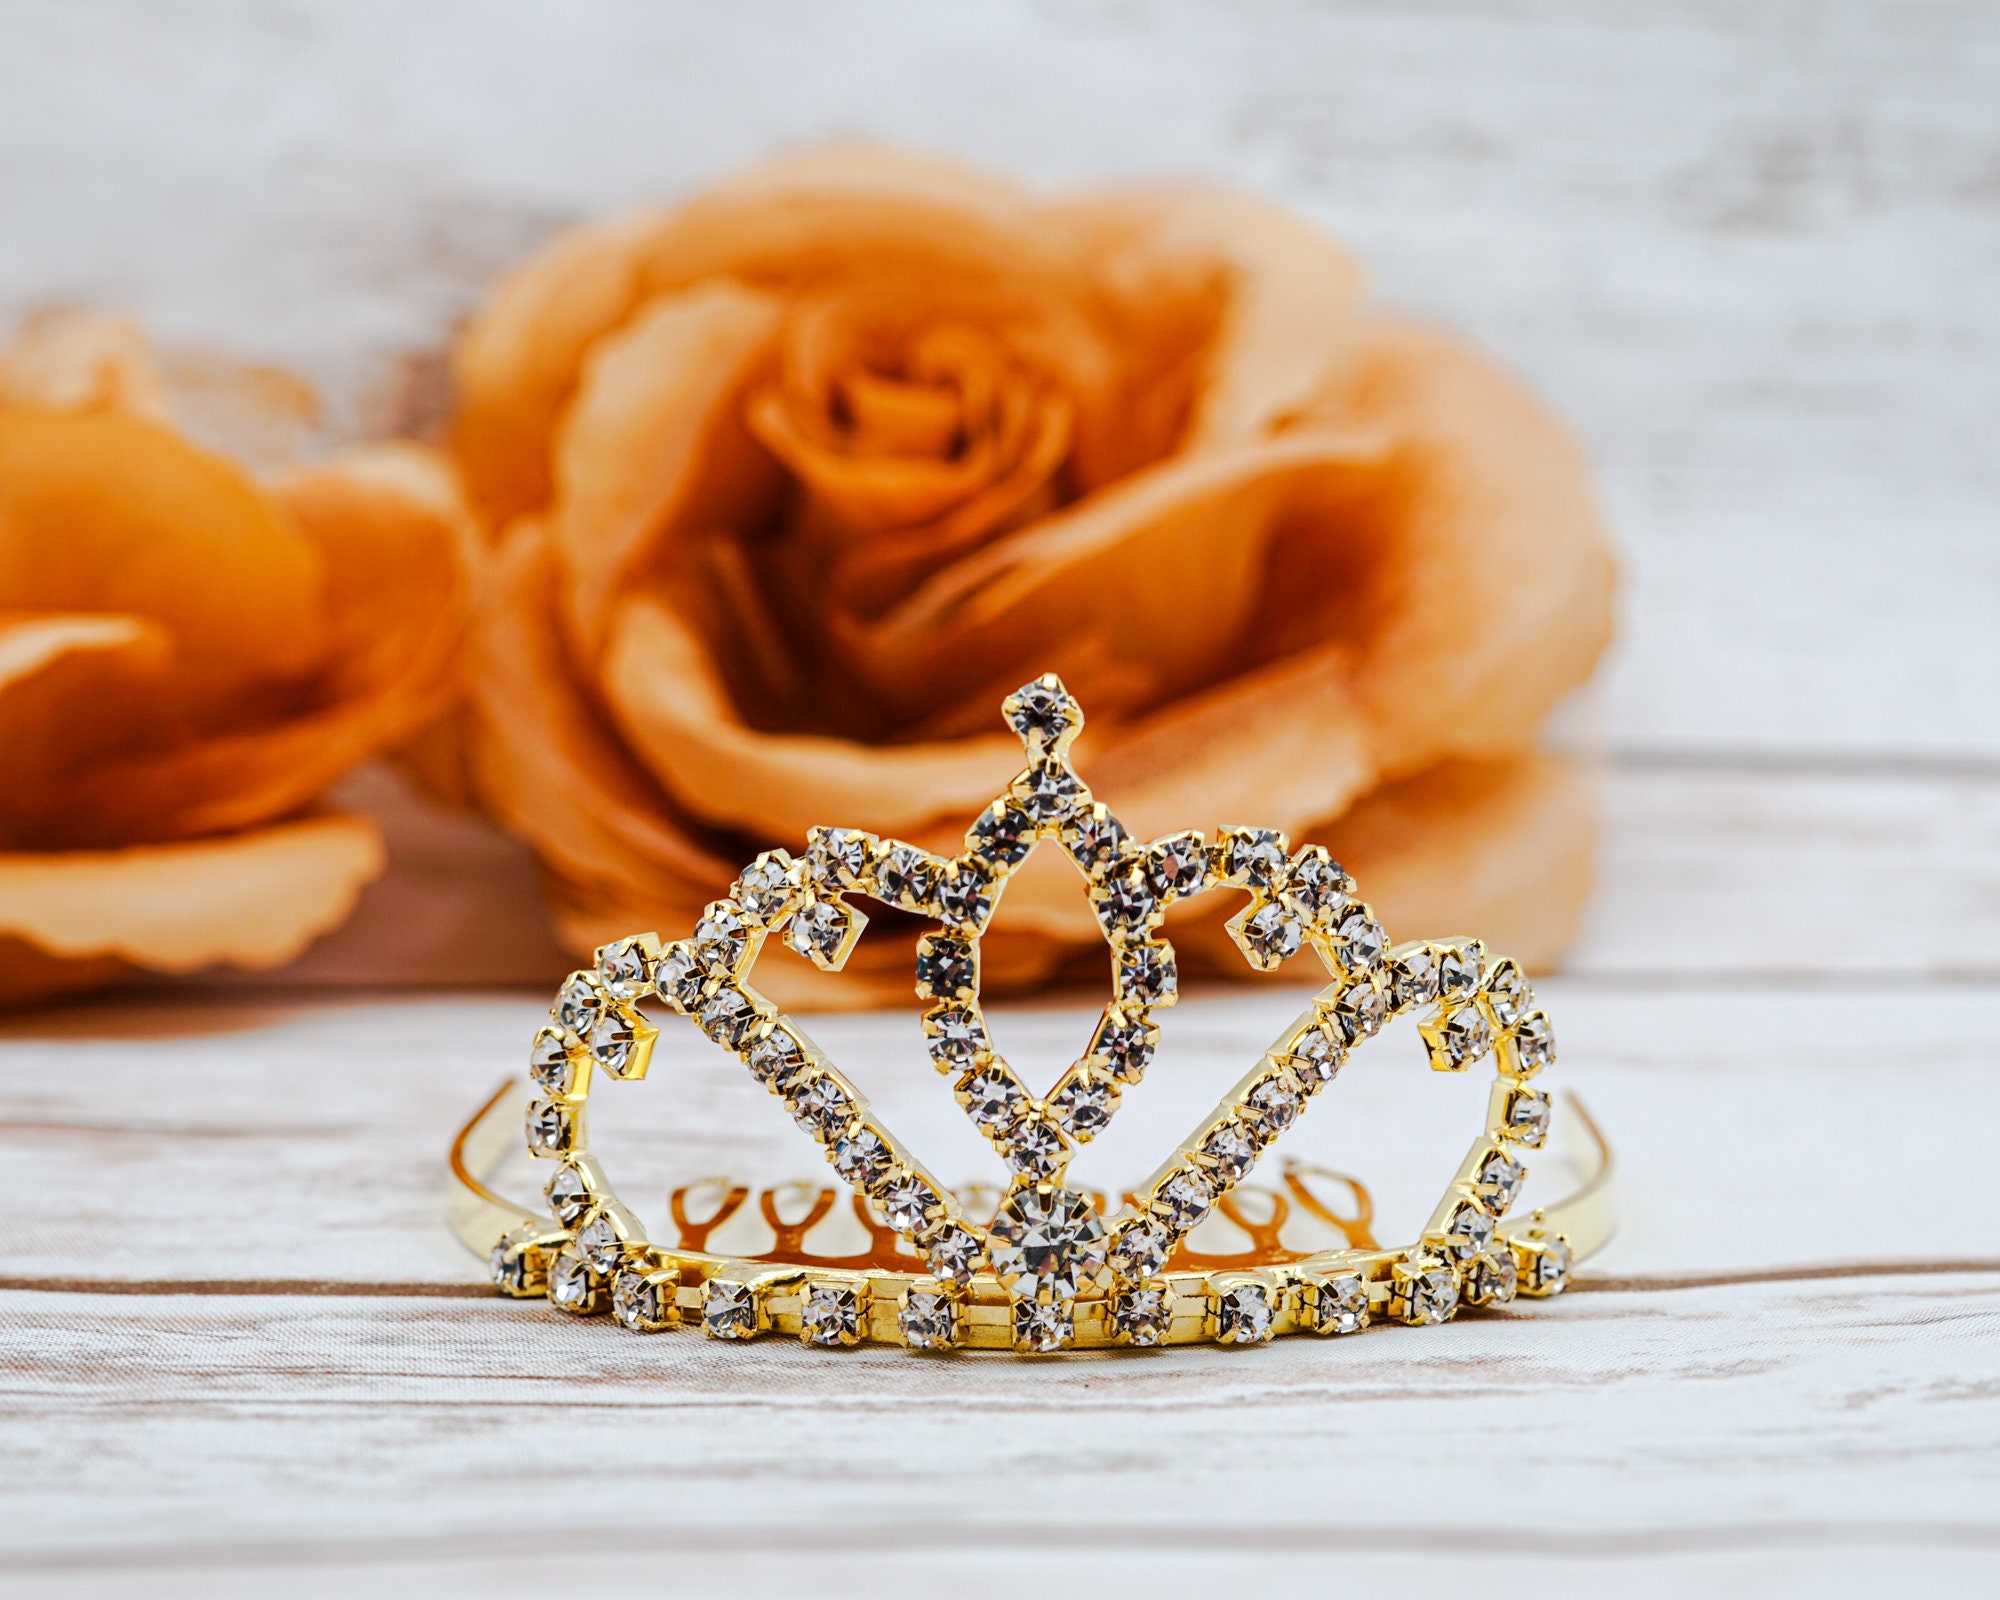 Princess Vanellope Von Schweetz Tiara Crown ,sugar Rush Wreck-it